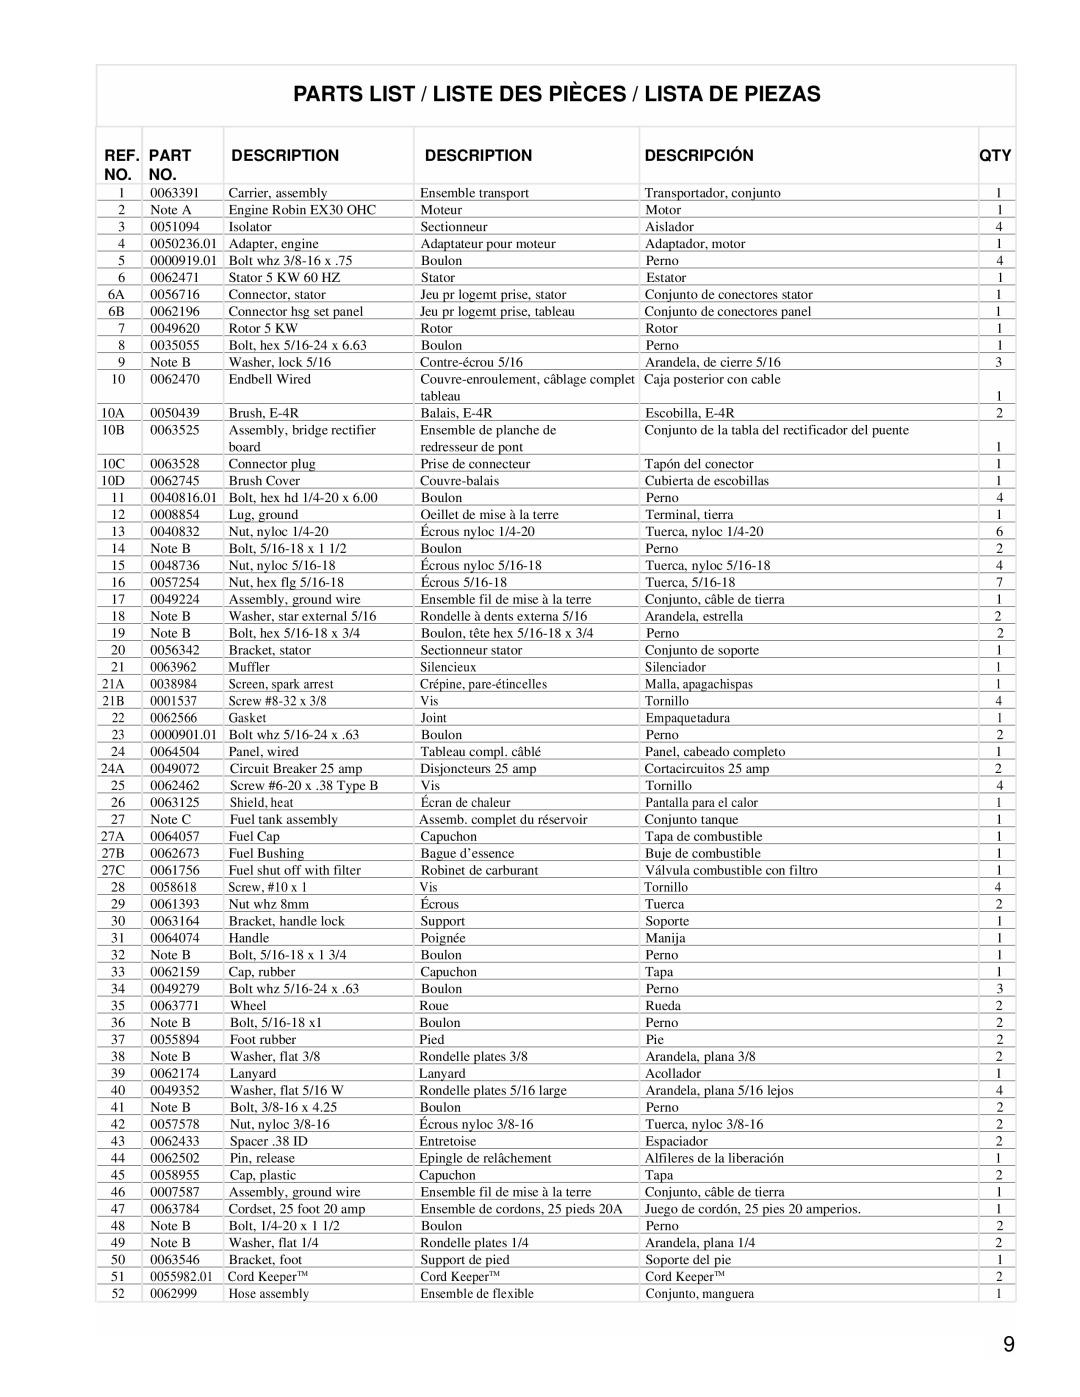 Powermate PM0435001 manual Parts List / Liste Des Pièces / Lista De Piezas, Description, Descripción 